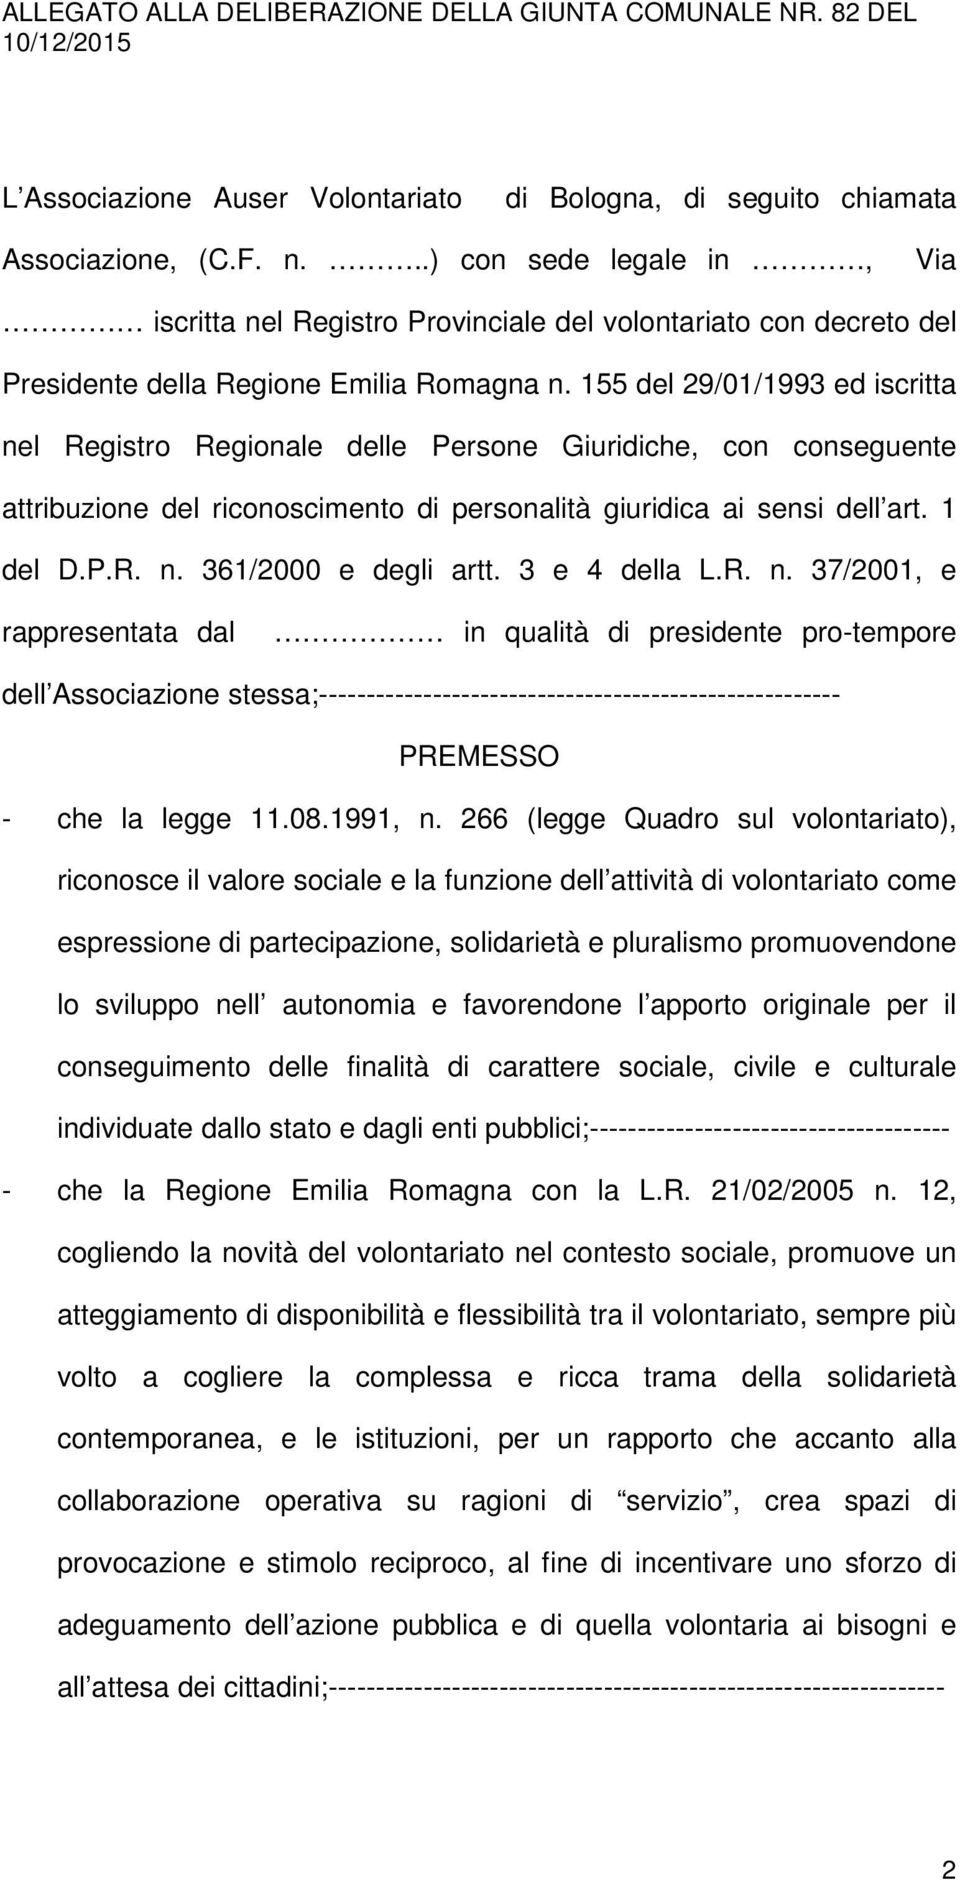 155 del 29/01/1993 ed iscritta nel Registro Regionale delle Persone Giuridiche, con conseguente attribuzione del riconoscimento di personalità giuridica ai sensi dell art. 1 del D.P.R. n. 361/2000 e degli artt.